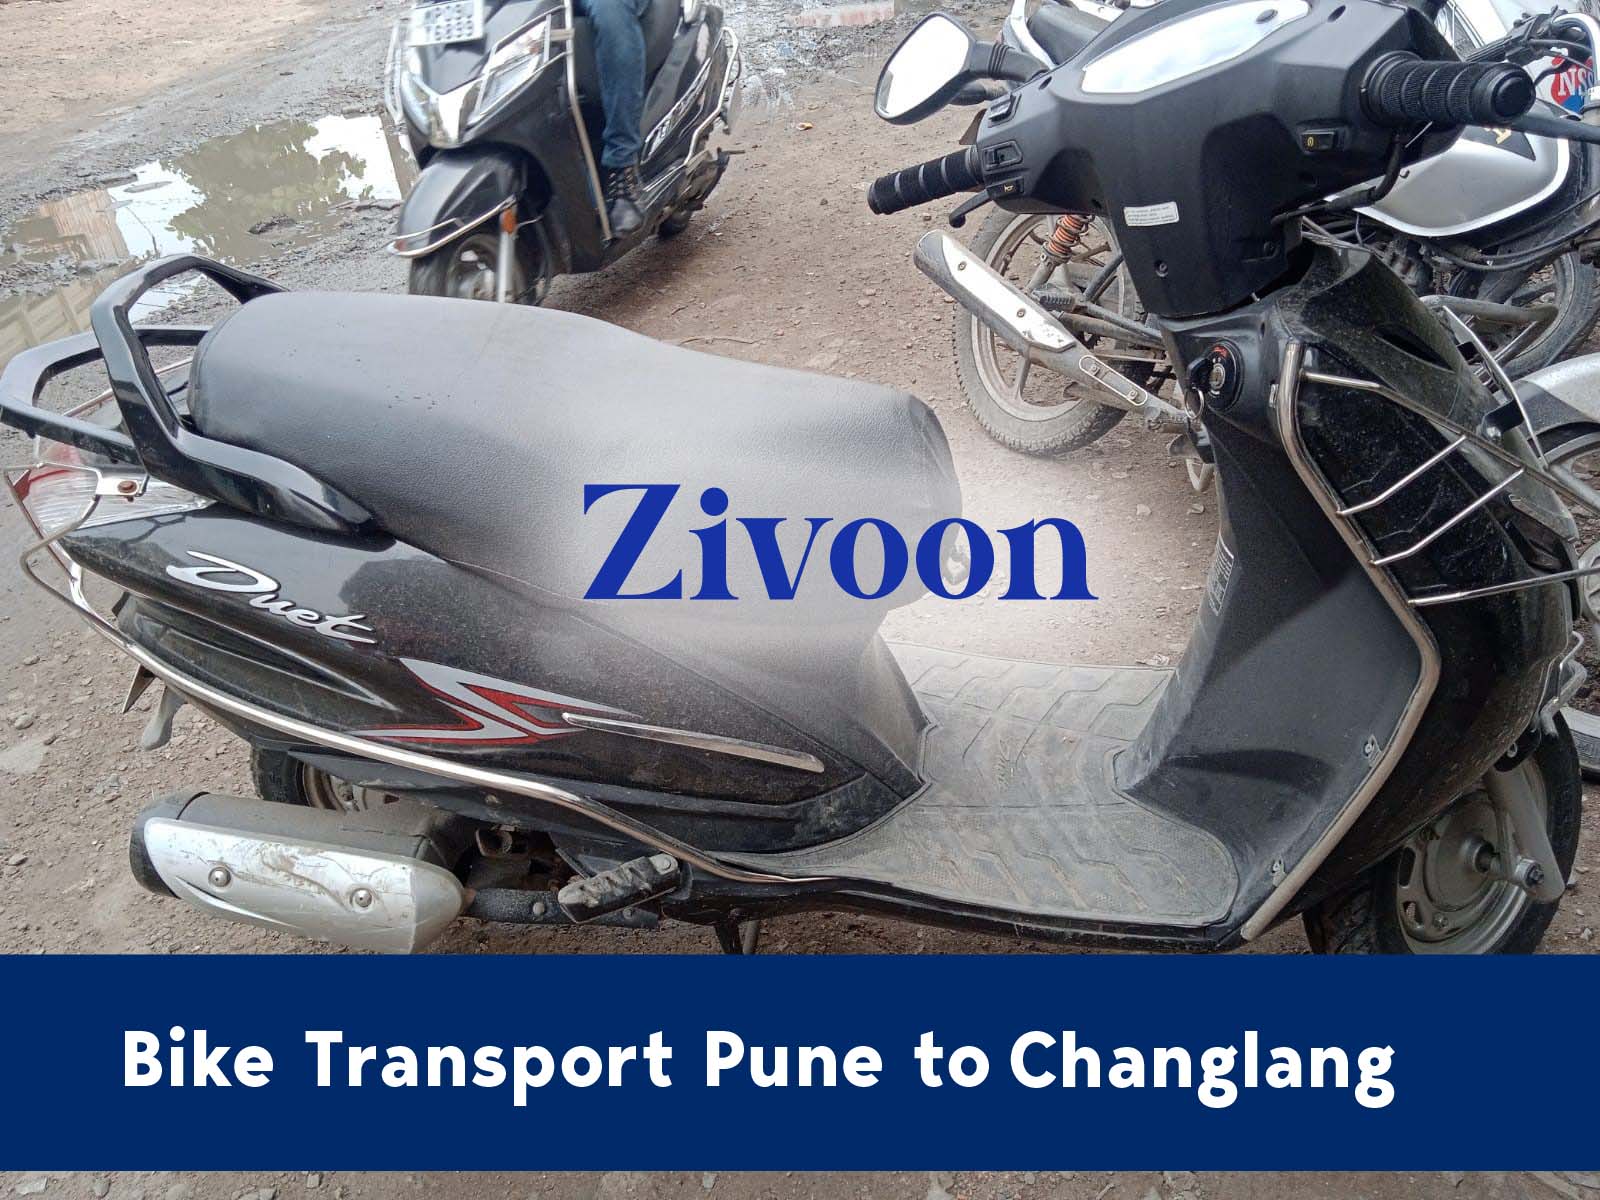 Bike Shifting Service Pune to Changlang